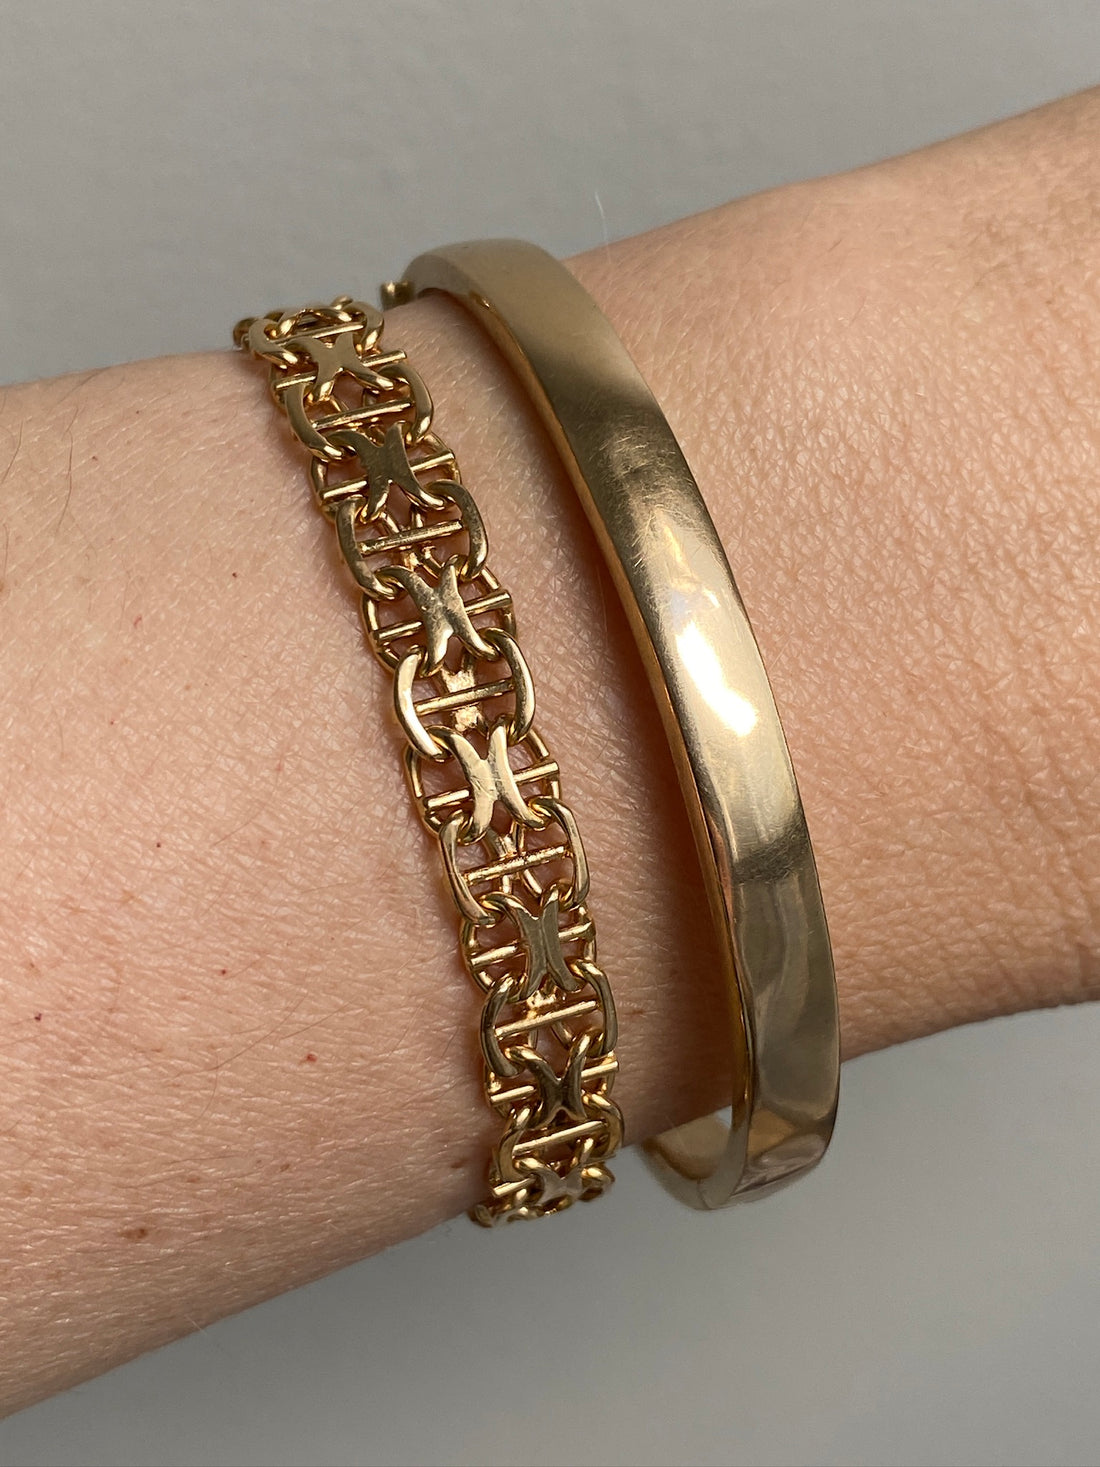 1961 X-link variation 18k gold bracelet - Vintage Swedish - 7 inch length